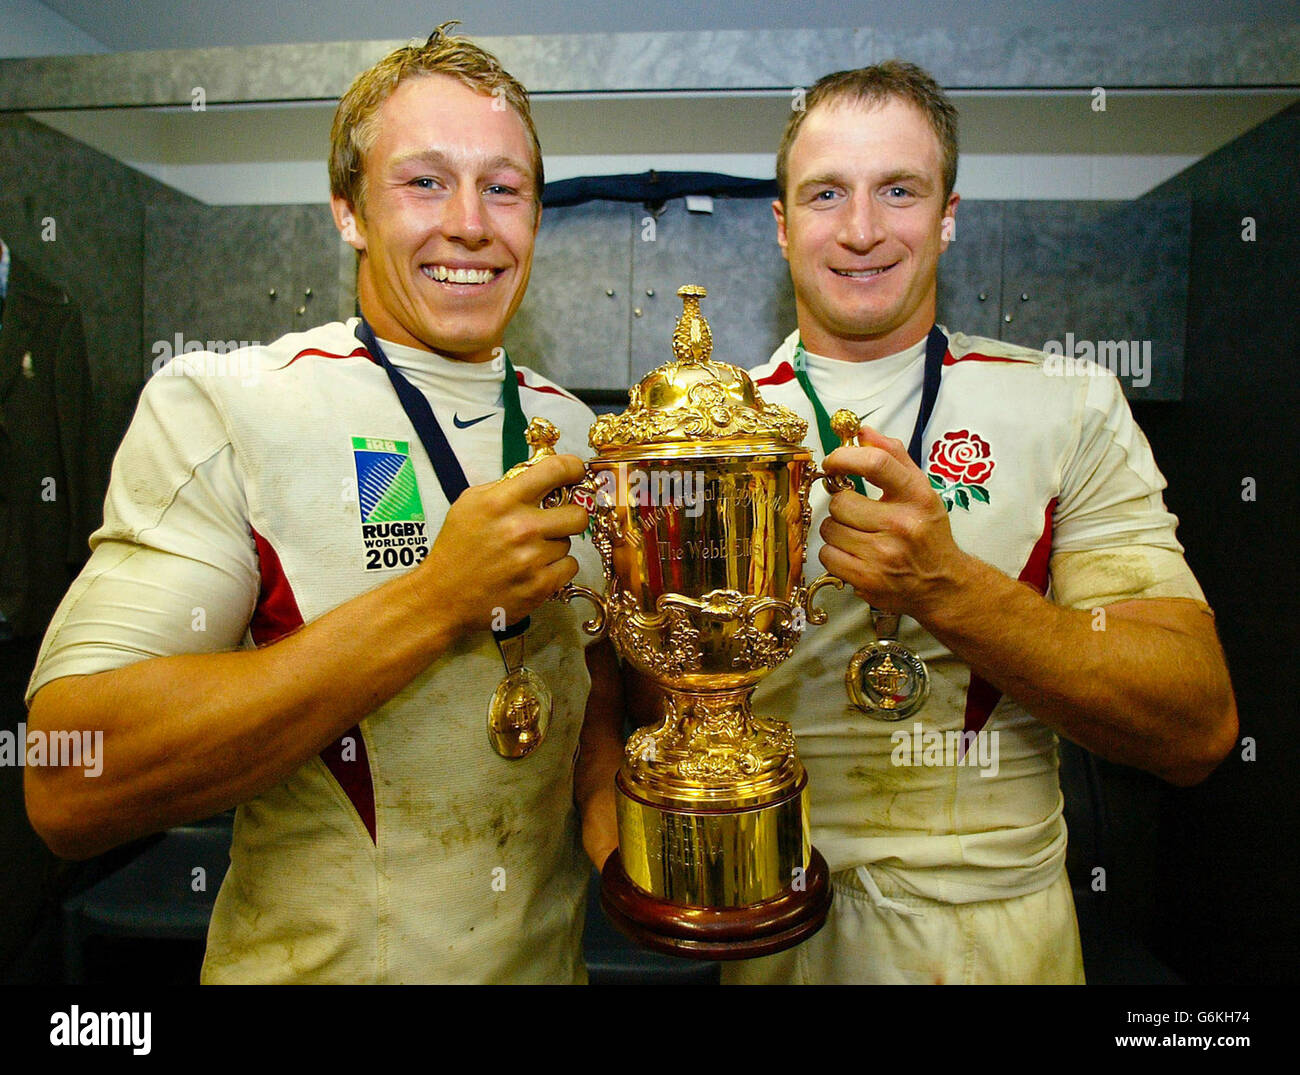 Jonny Wilkinson ging und Mike Catt aus England feiert in den Umkleideräumen mit der William Webb Ellis Trophäe nach dem Sieg Englands bei der Rugby-Weltmeisterschaft gegen Australien in Sydney. Stockfoto